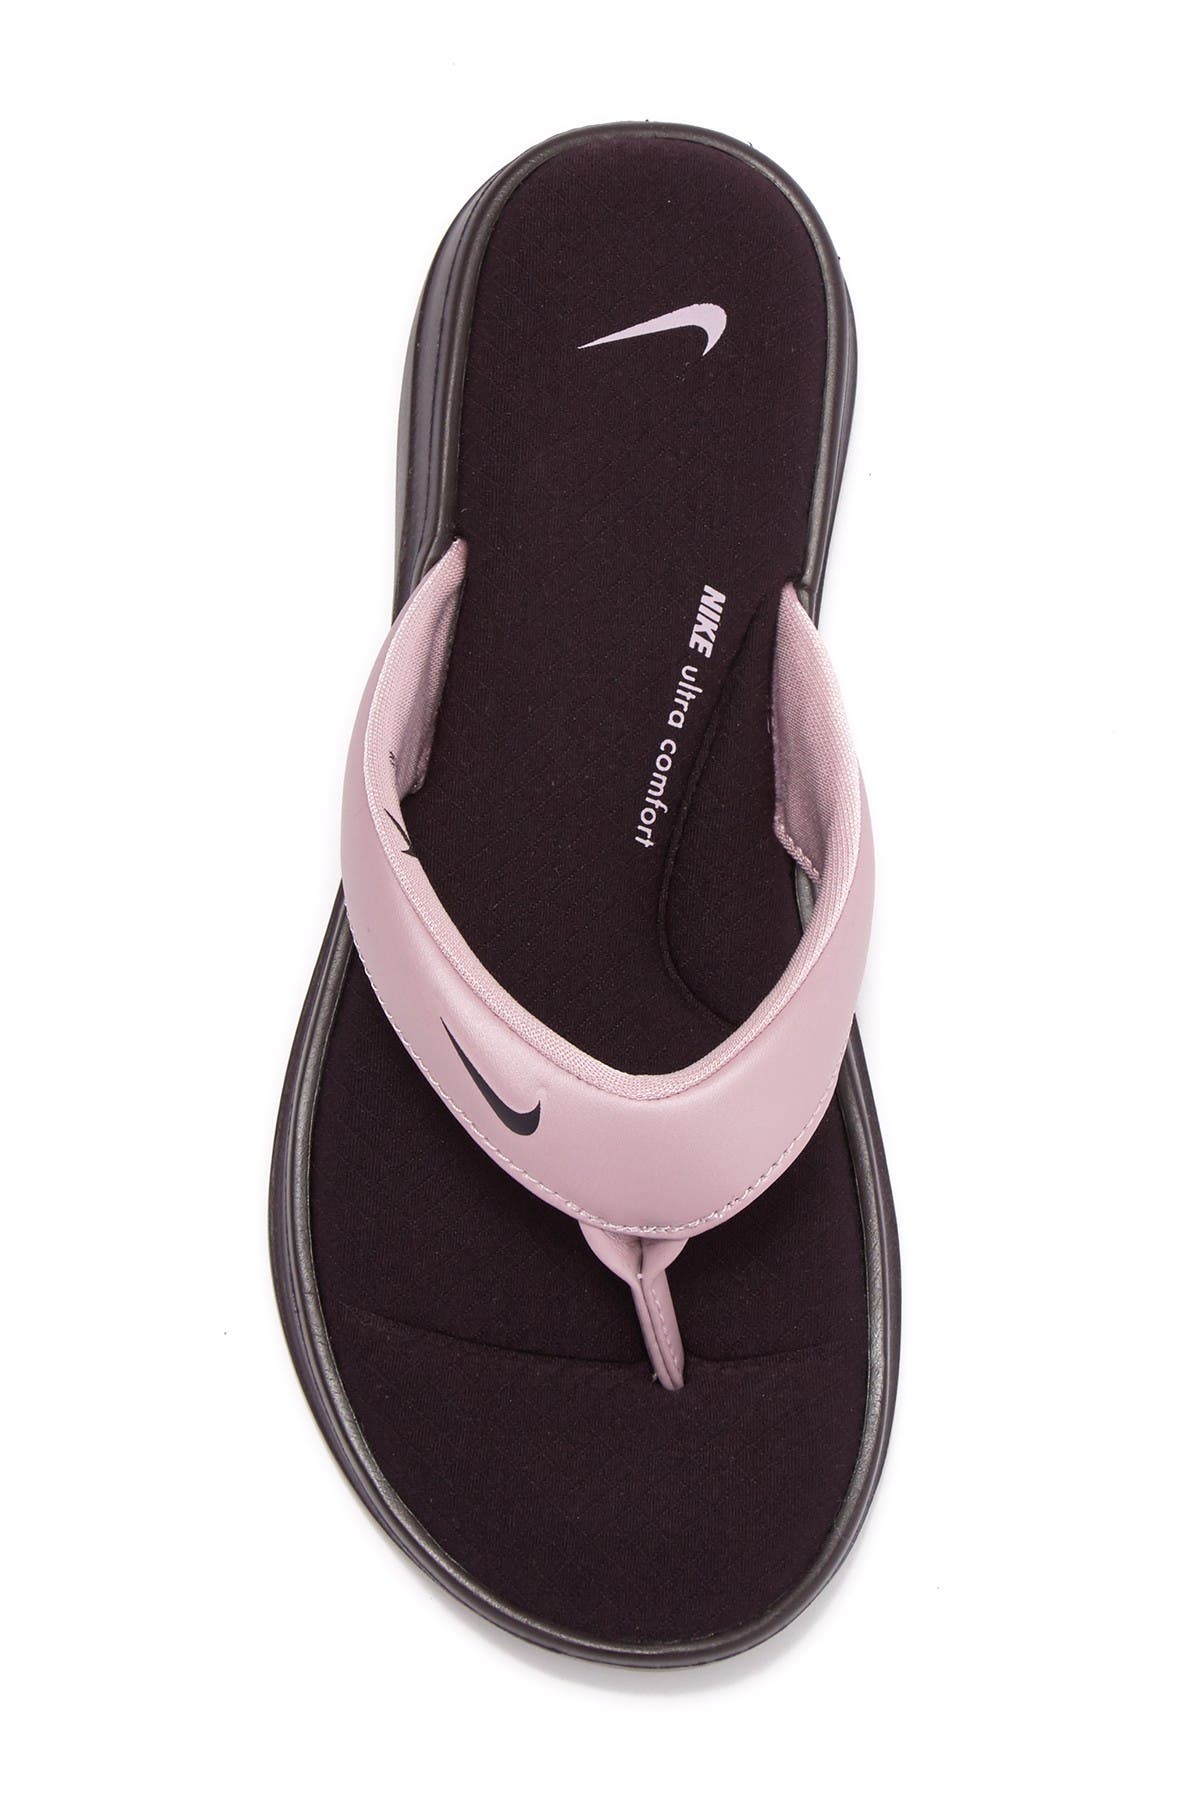 ultra comfort flip flops